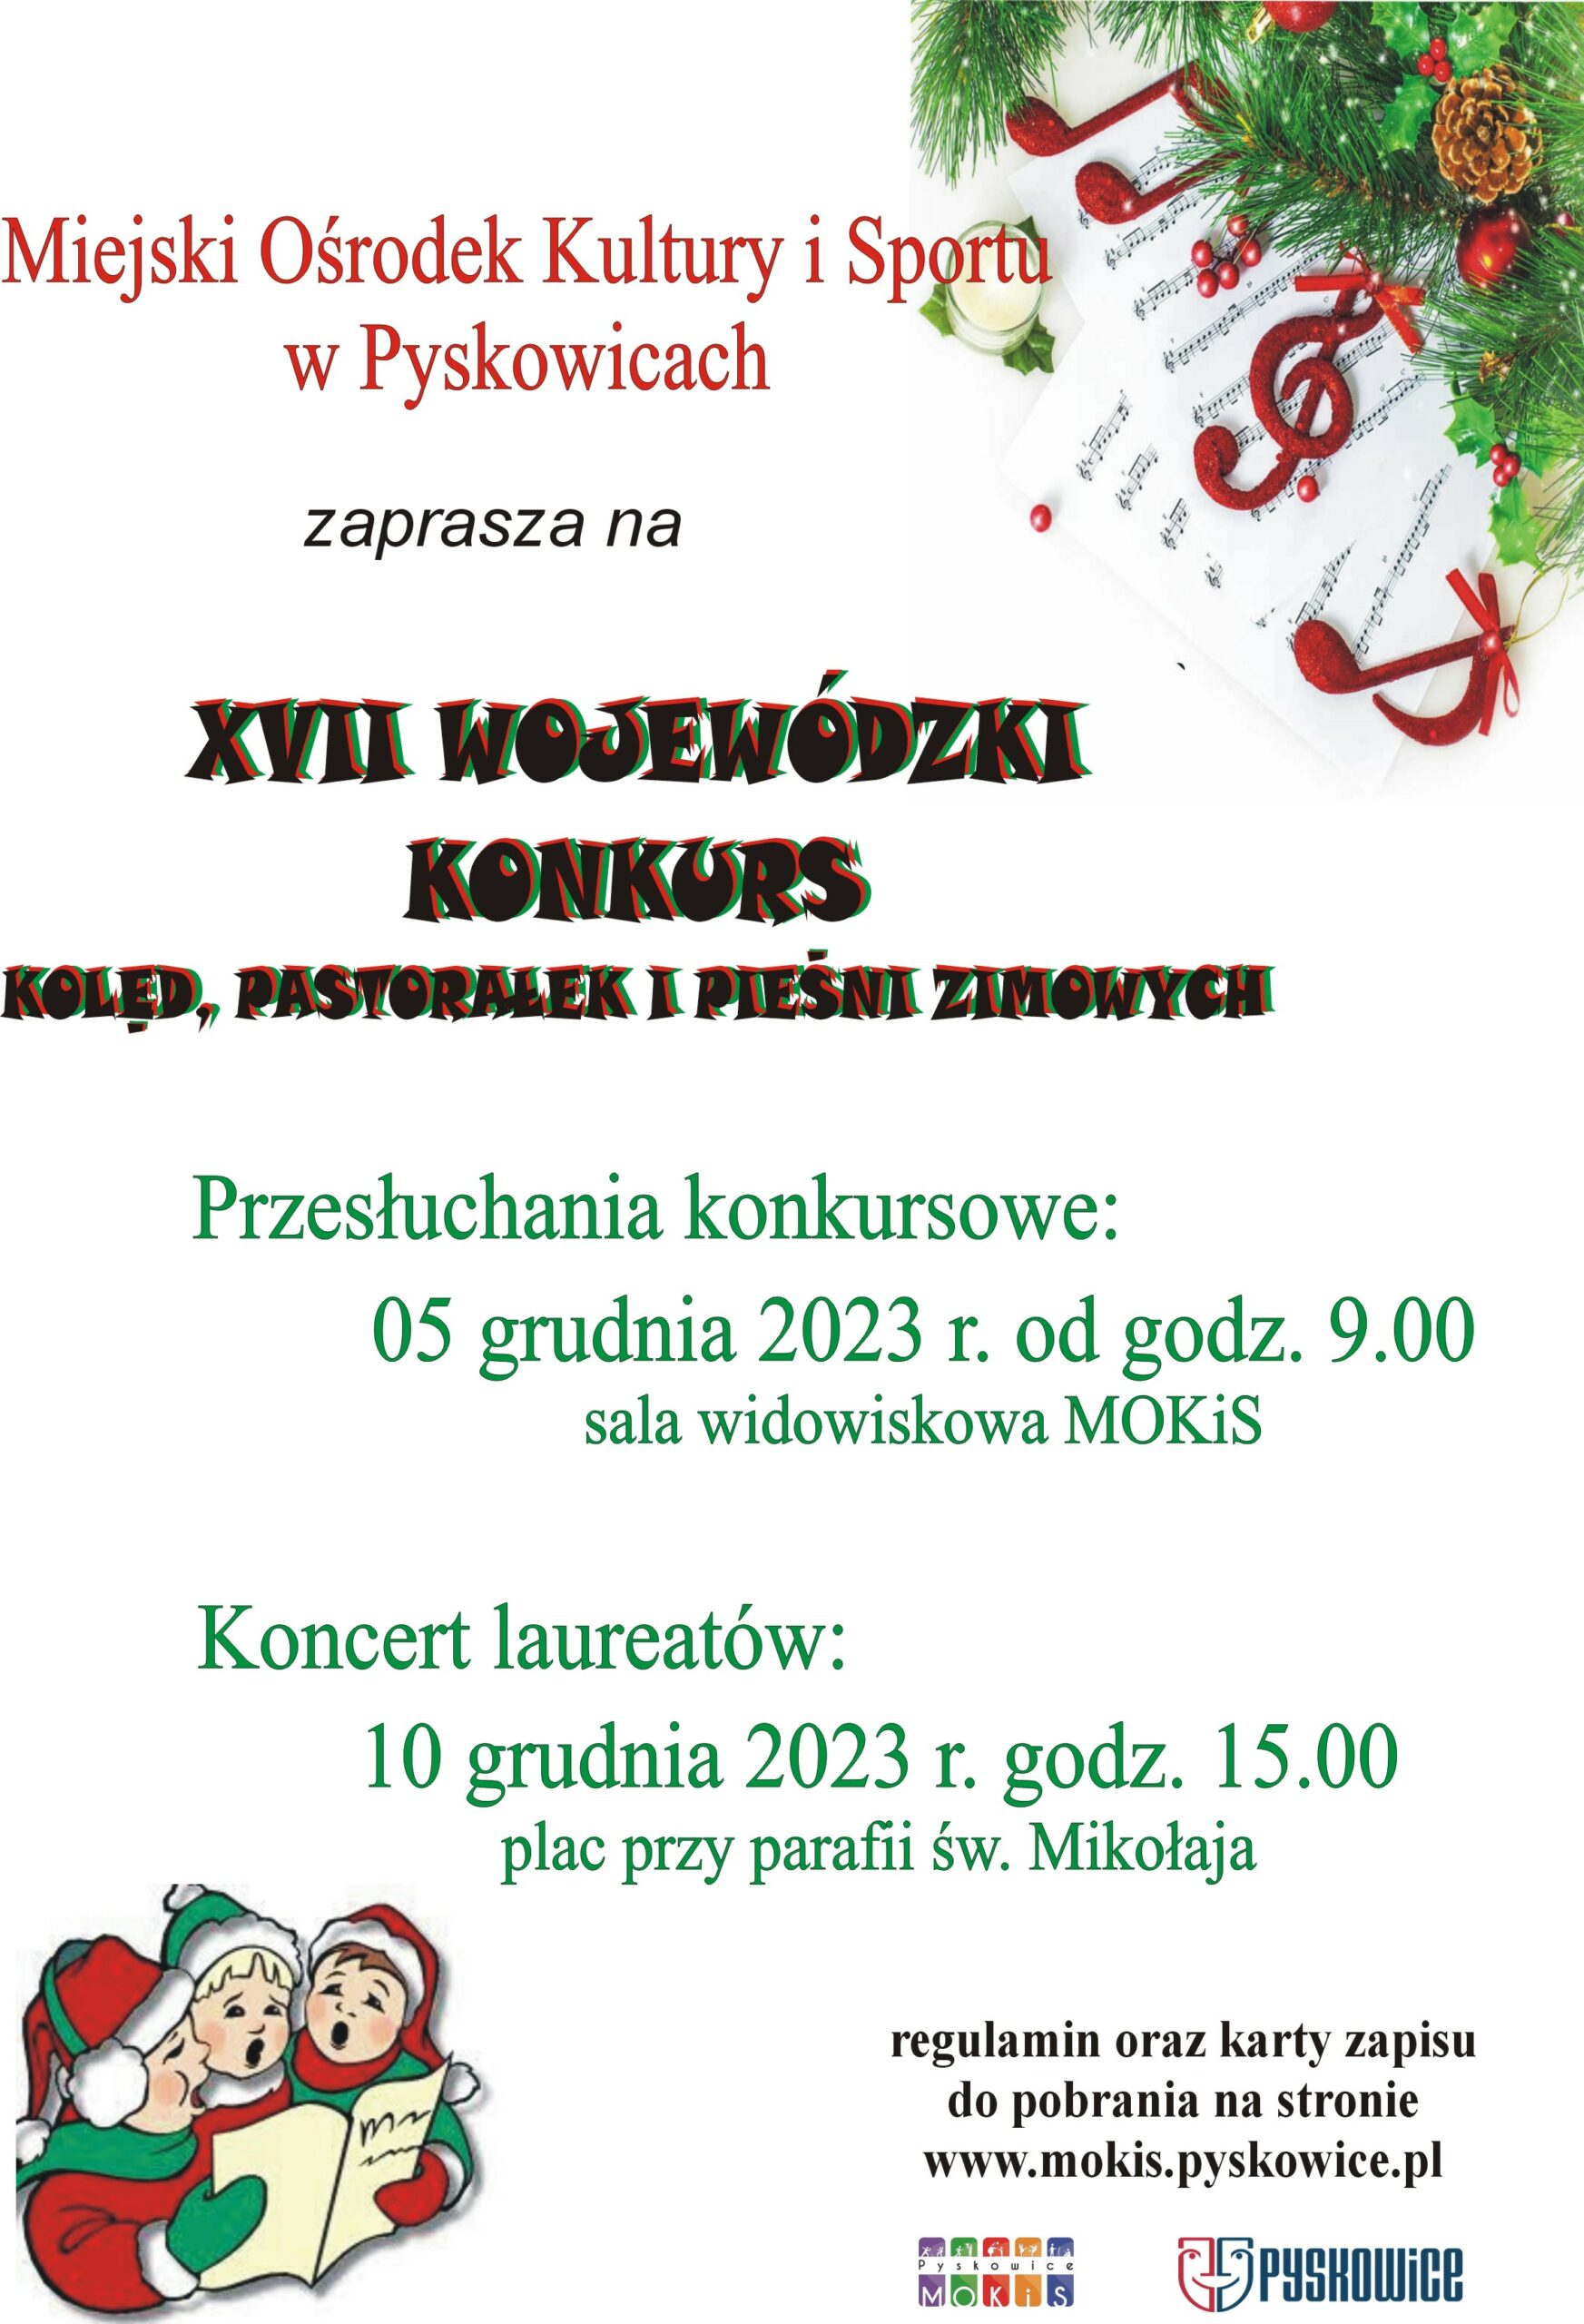 Plakat promujący XVII Wojewódzki Konkurs Kolęd Pastorałek i Pieśni Zimowych